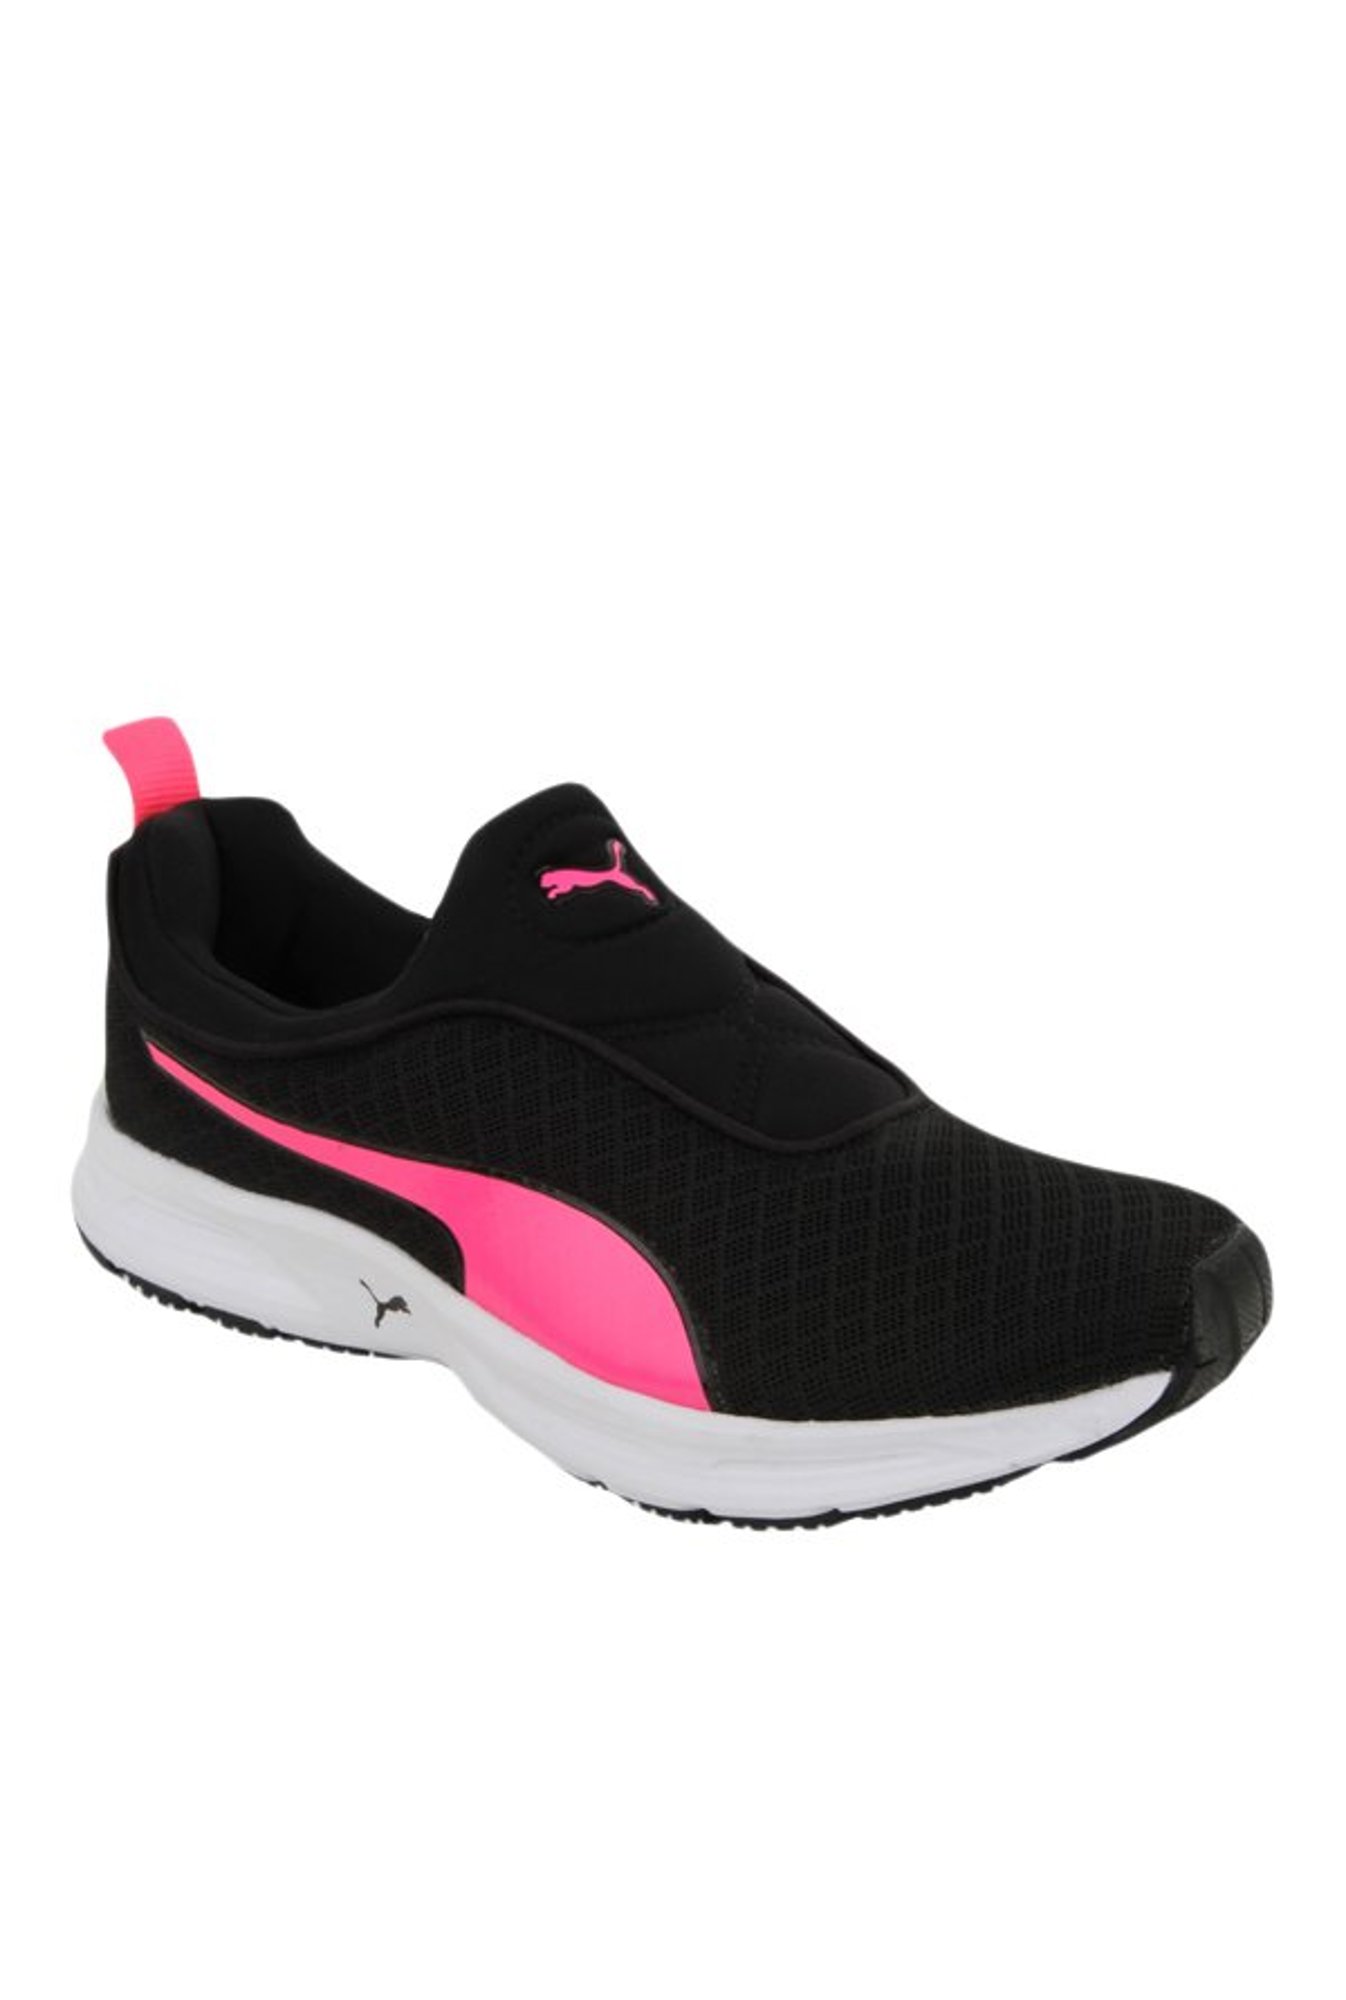 Nike Dunk Low Twist sneakers in pink & black | ASOS